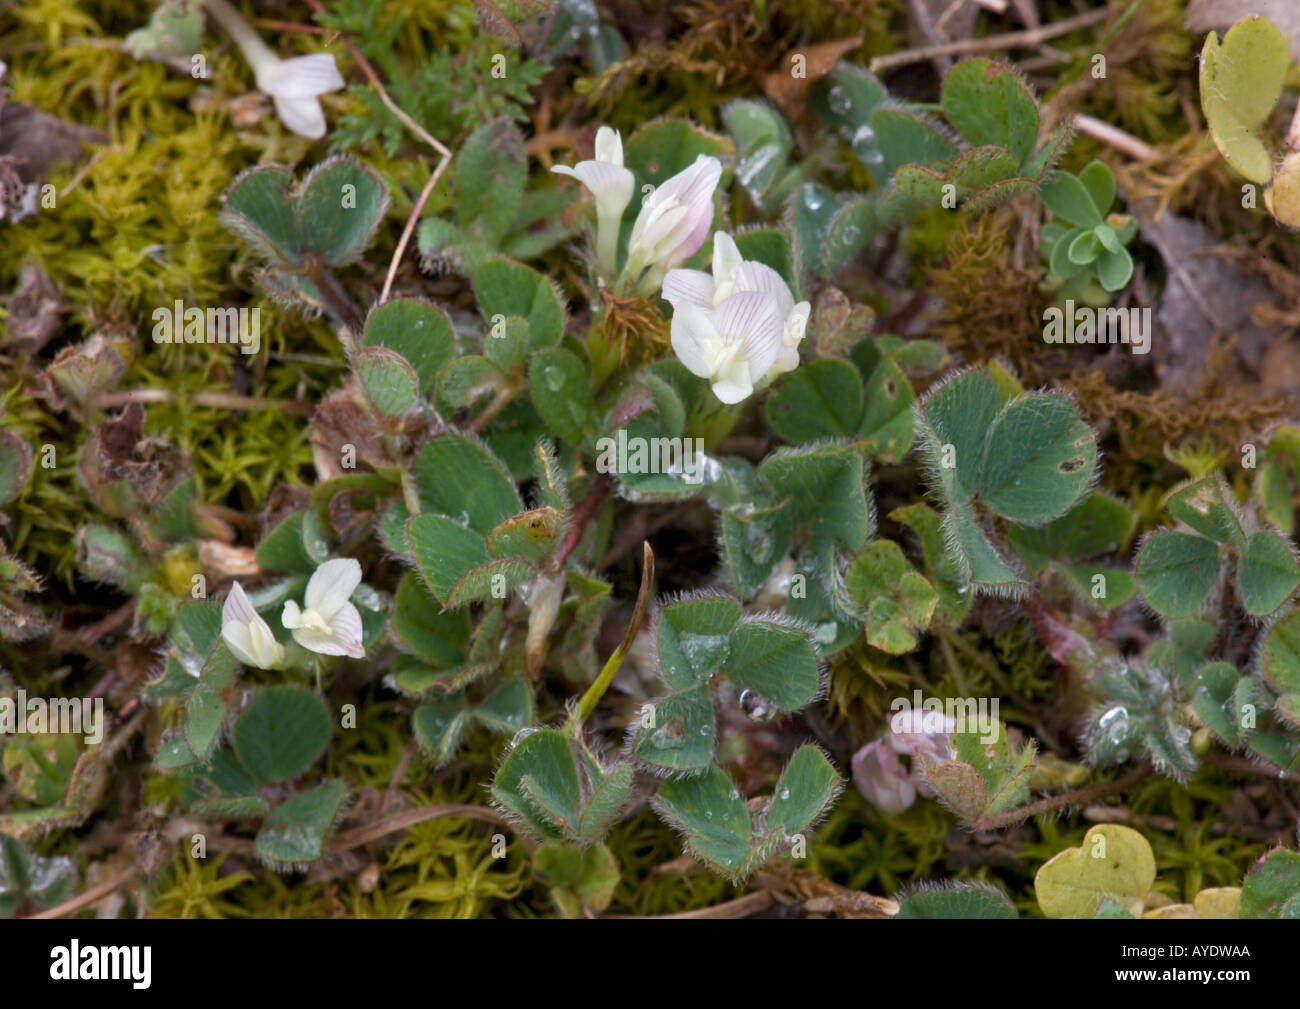 Subterranean clover in flower, Trifolium subterraneum Stock Photo